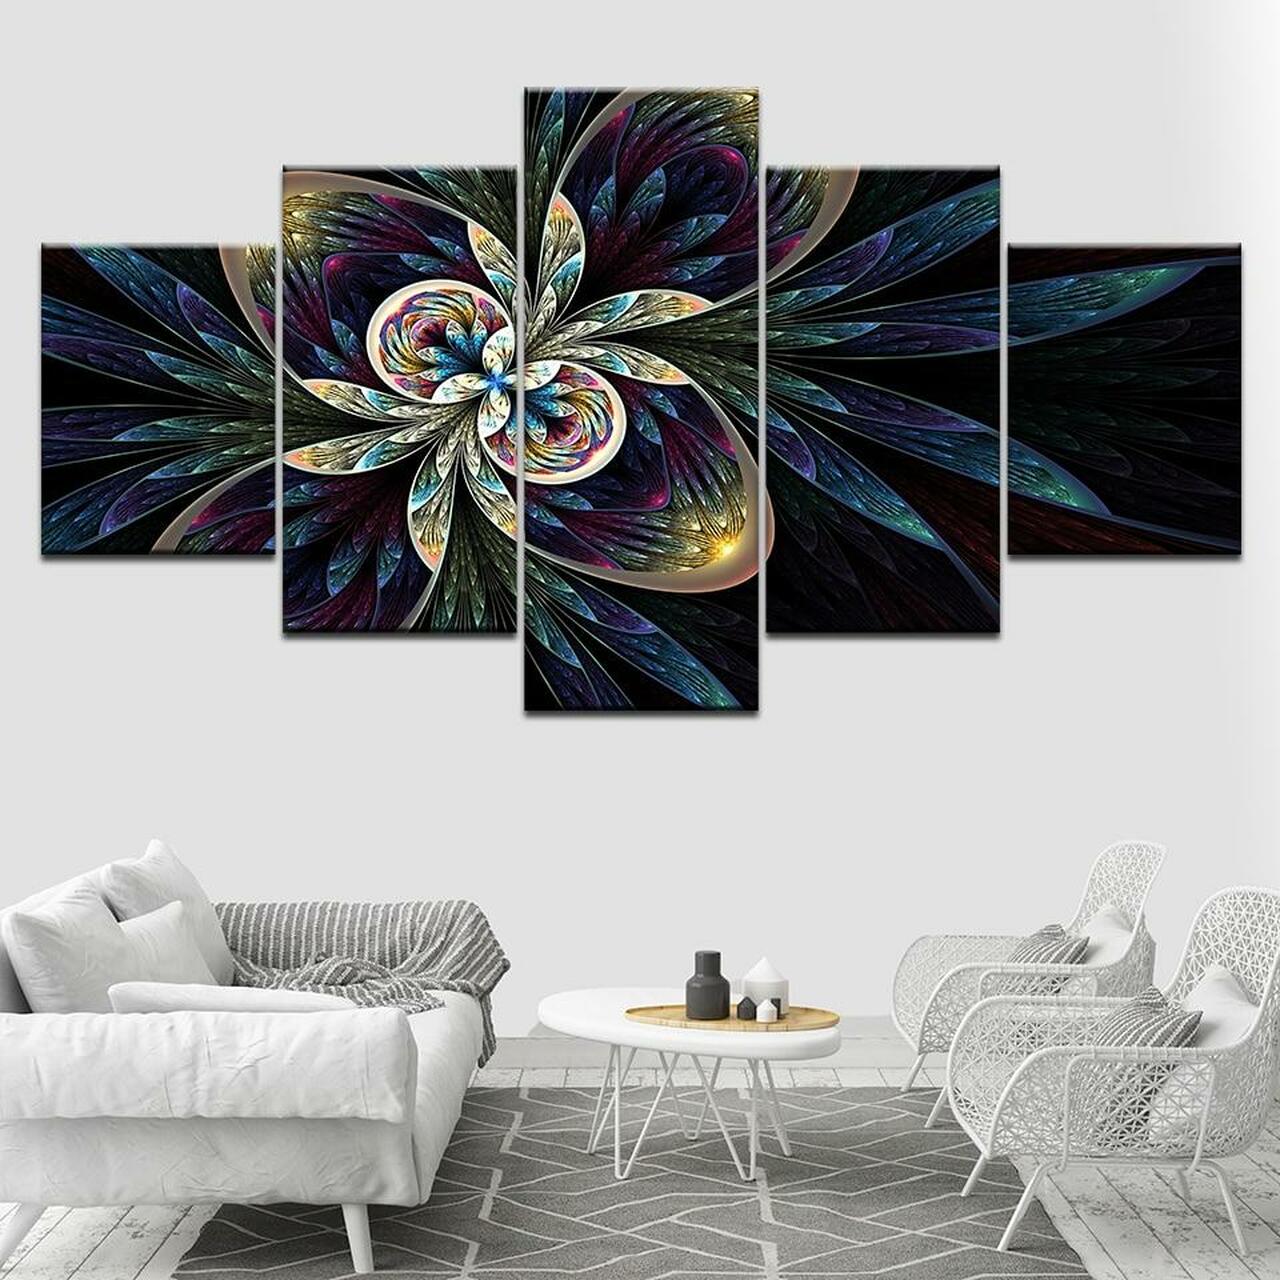 Patterns Of Flower 5 Piece Canvas Art Wall Decor